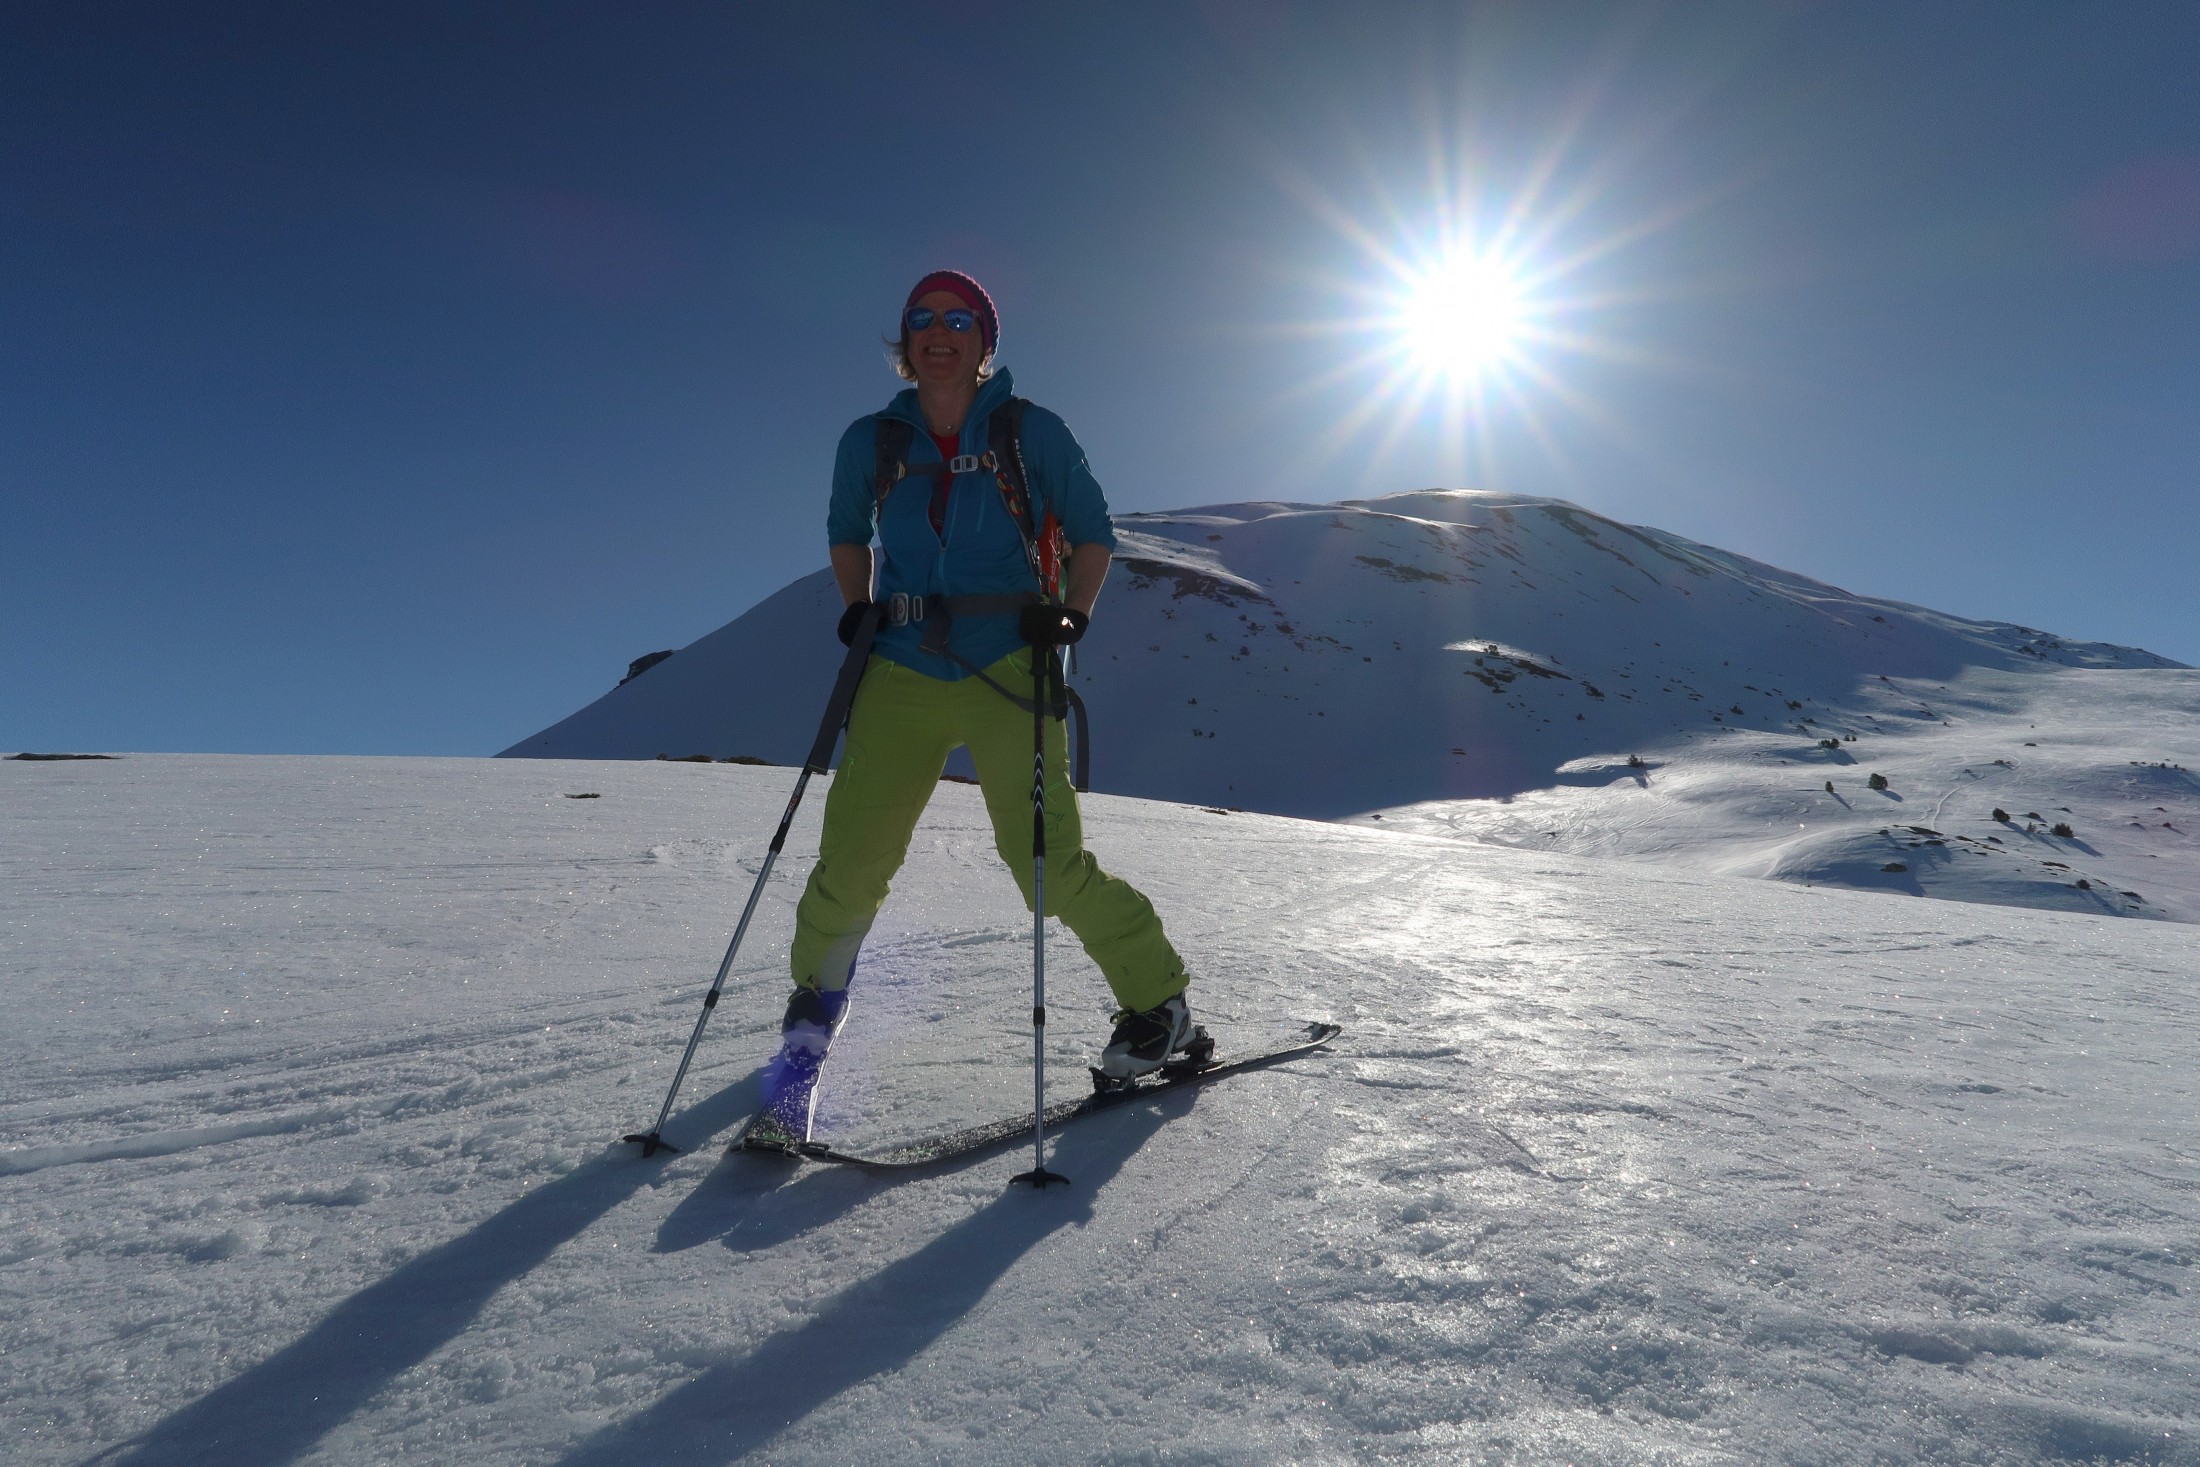 Skitourenwoche im Val Müstair